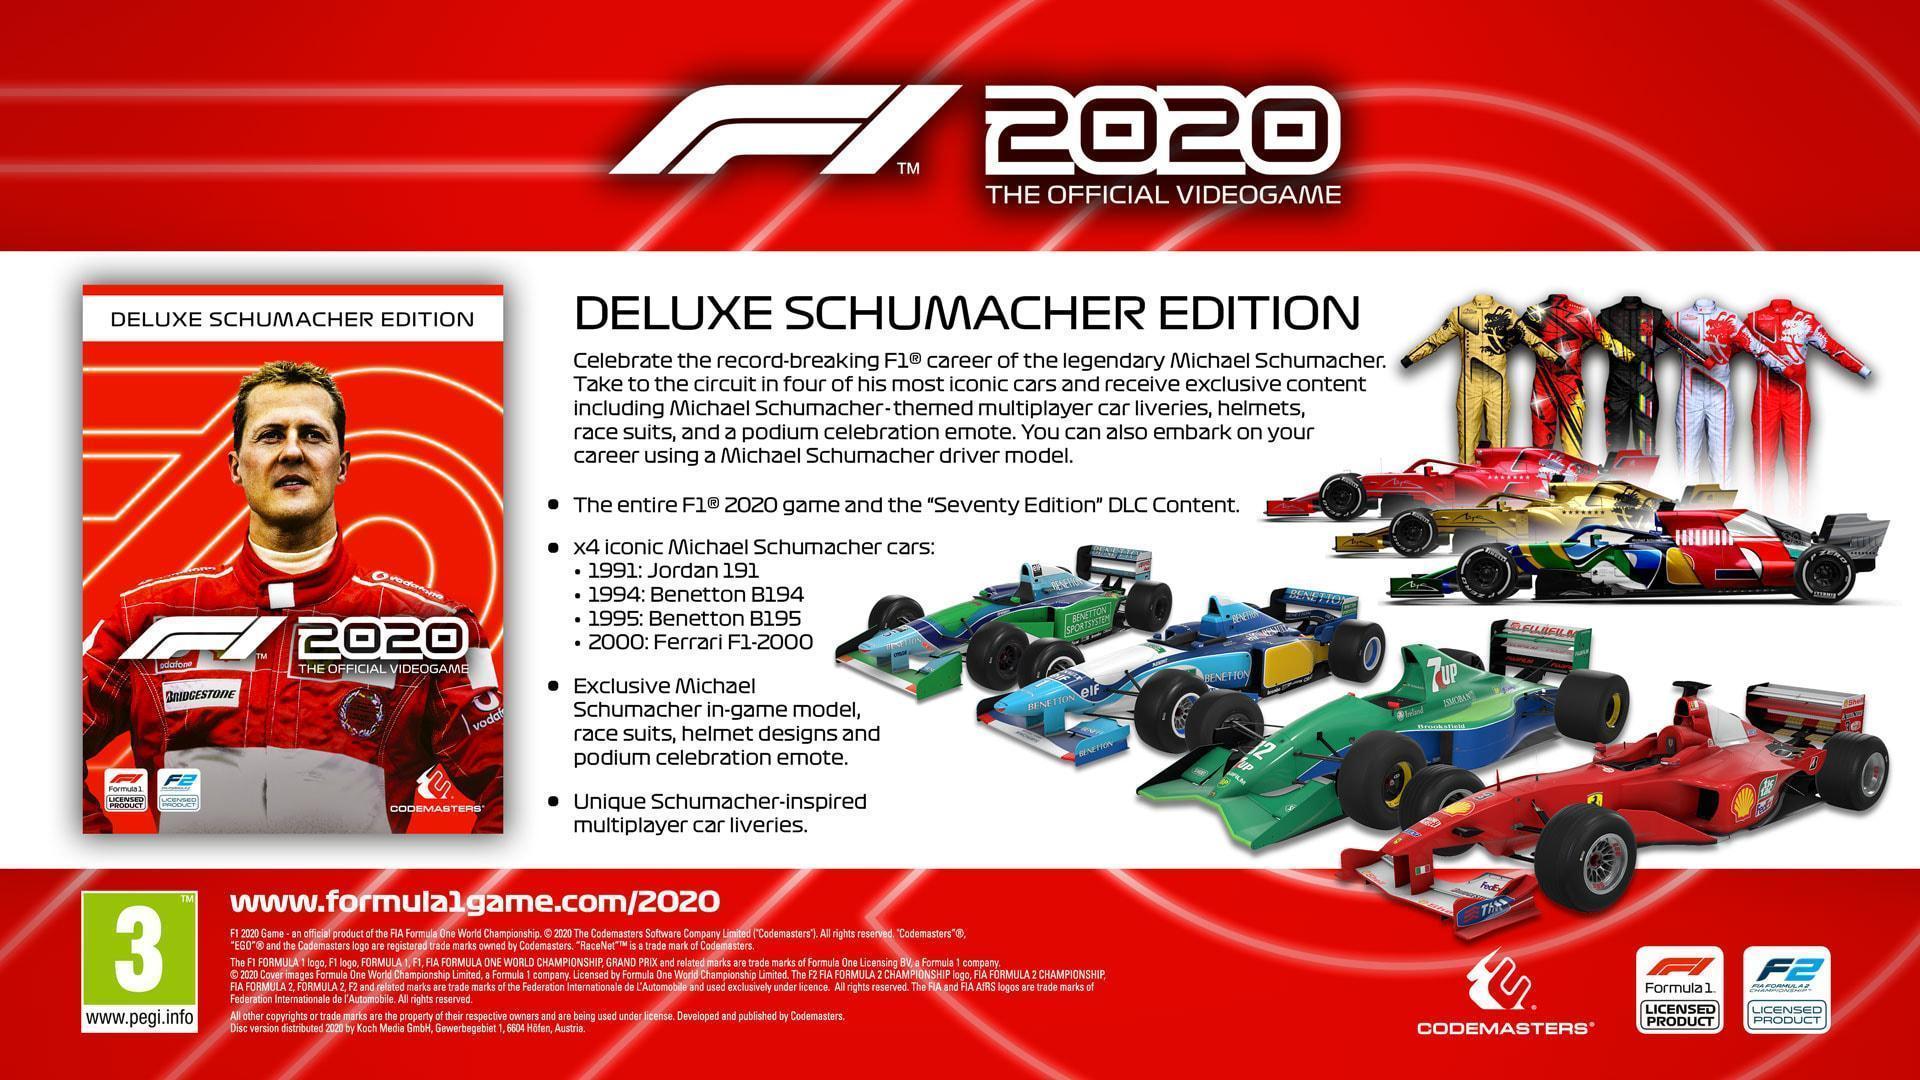 F1 2020 Deluxe Schumacher Edition Details